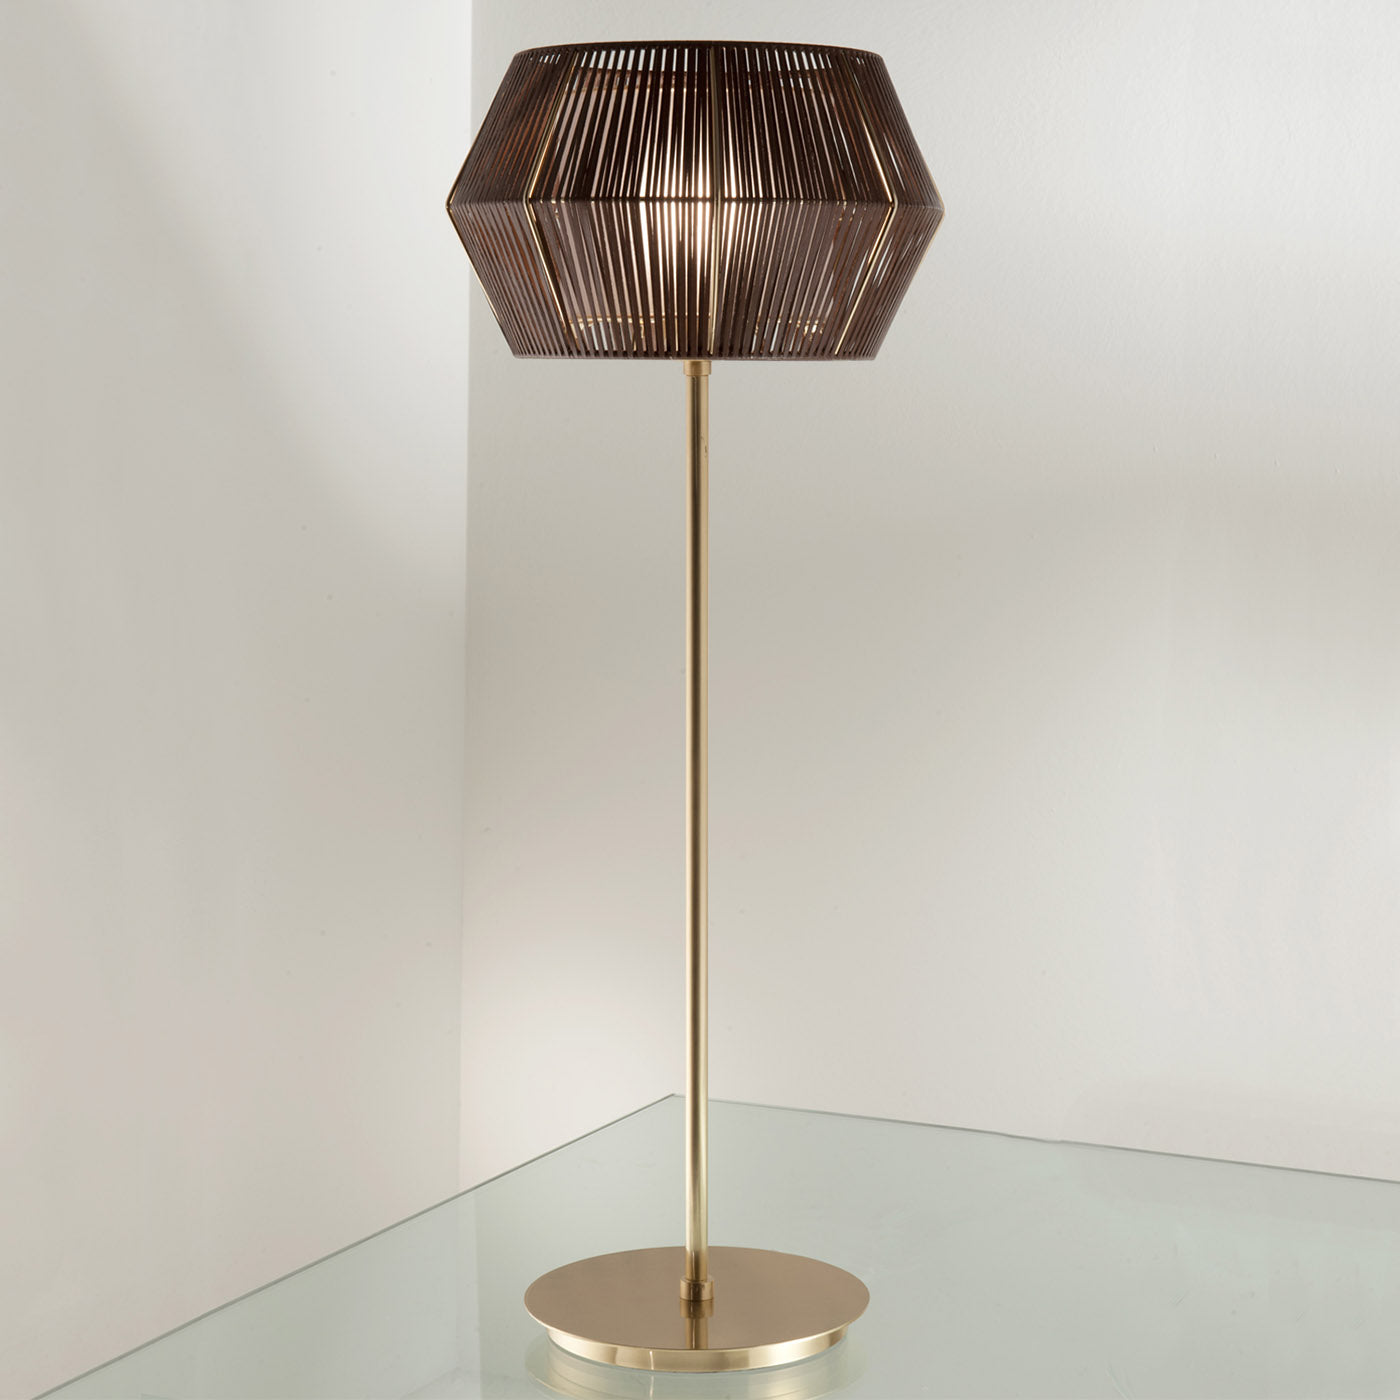 Novecento Table Lamp by Roberto Lazzeroni #12 - Alternative view 3